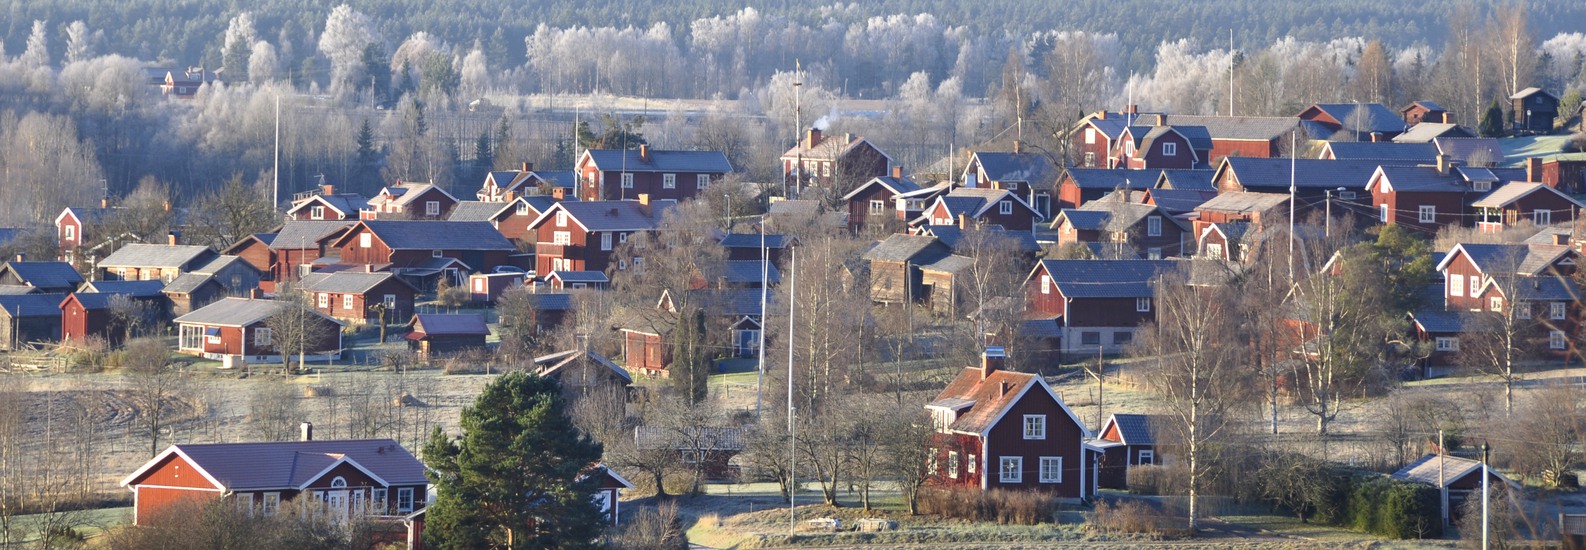 Bymiljö i frostlandskap.